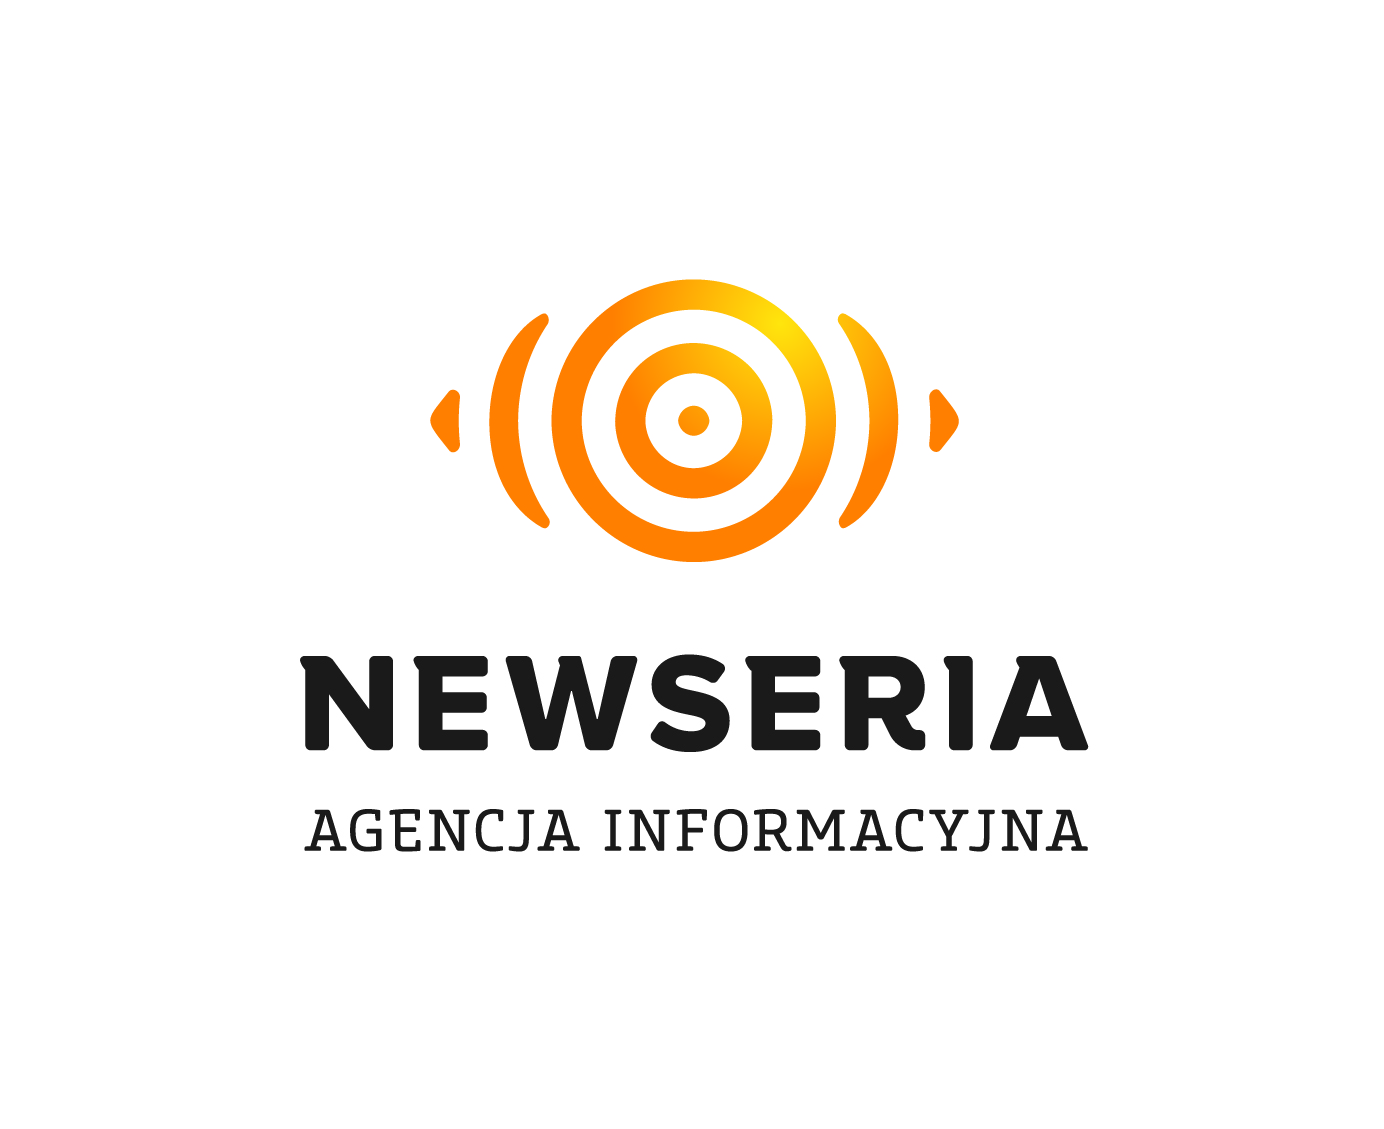 Newseria Agencja Informacyjna